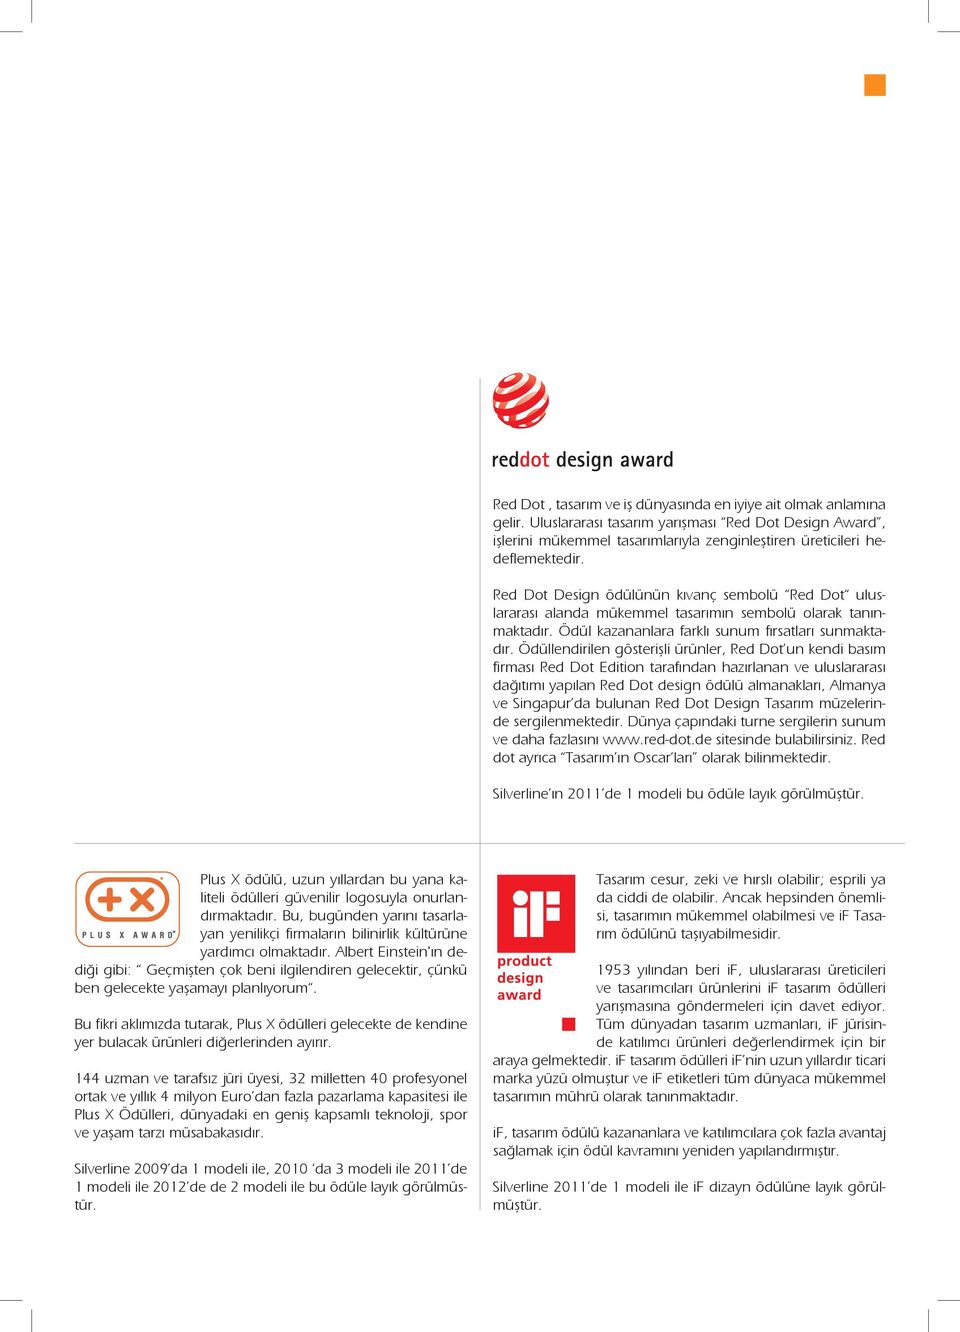 Ödüllendirilen gösterişli ürünler, Red Dot un kendi basım firması Red Dot Edition tarafından hazırlanan ve uluslararası dağıtımı yapılan Red Dot design ödülü almanakları, Almanya ve Singapur da